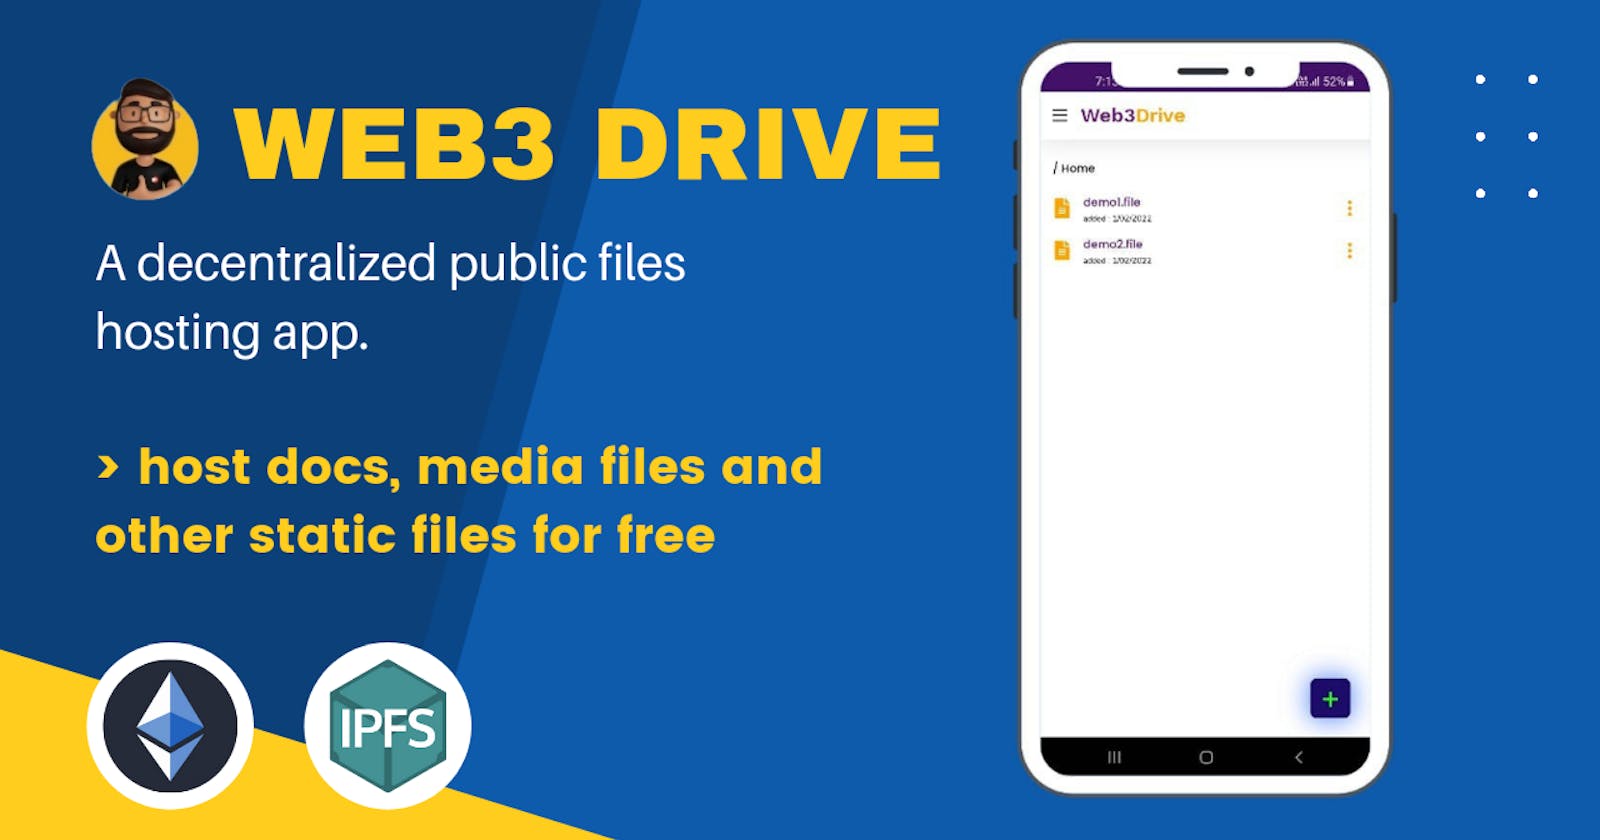 Web3Drive - A decentralized public files hosting app